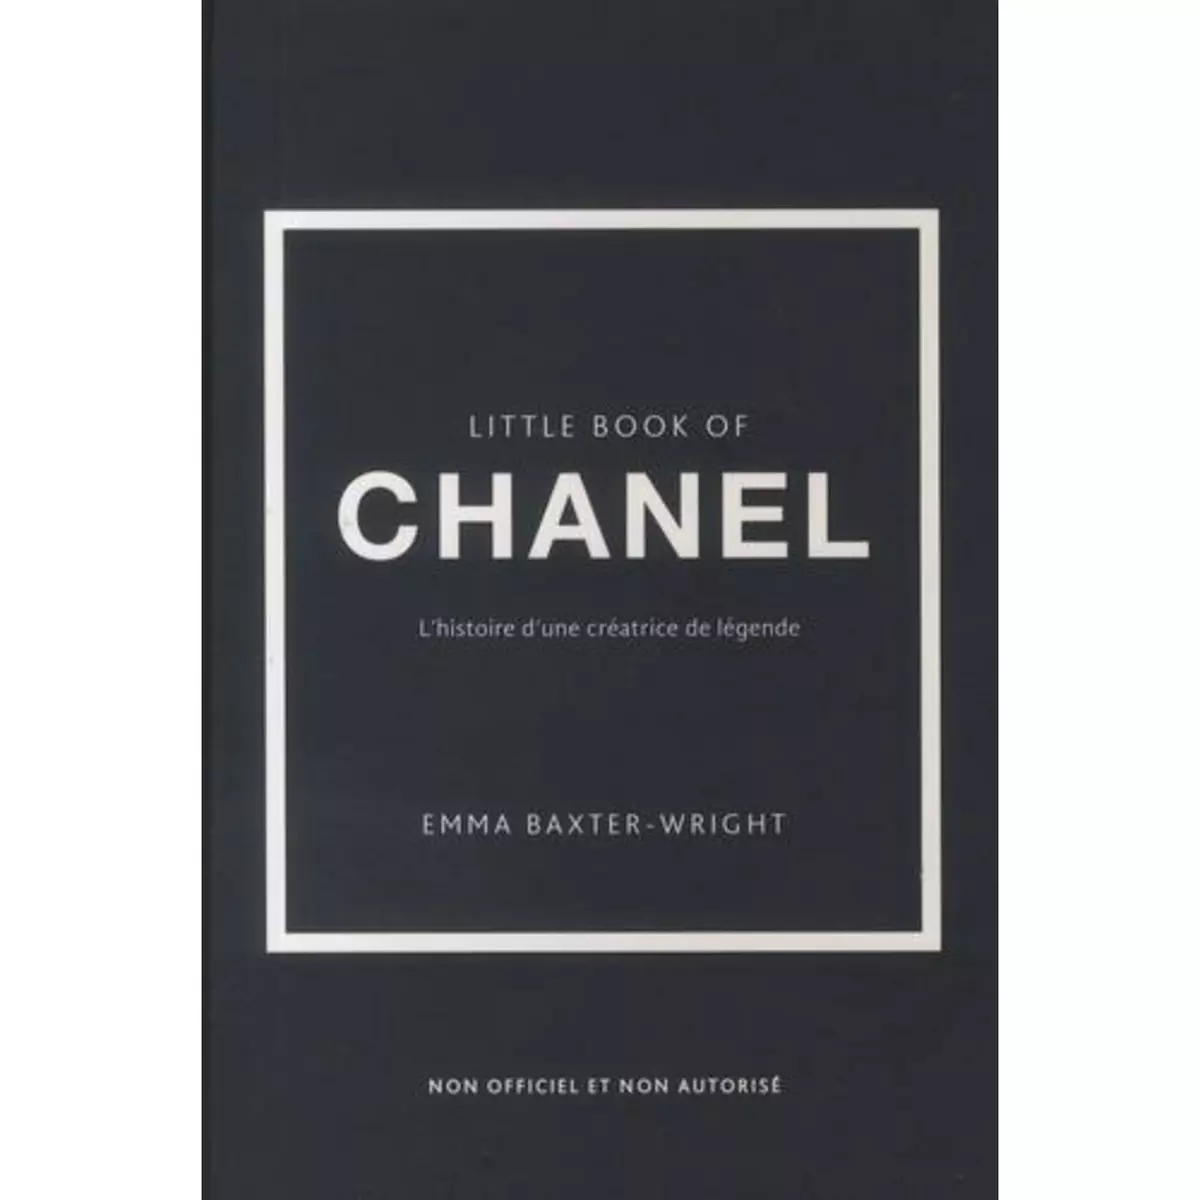  LITTLE BOOK OF CHANEL. L'HISTOIRE D'UNE CREATRICE DE LEGENDE, Baxter-Wright Emma